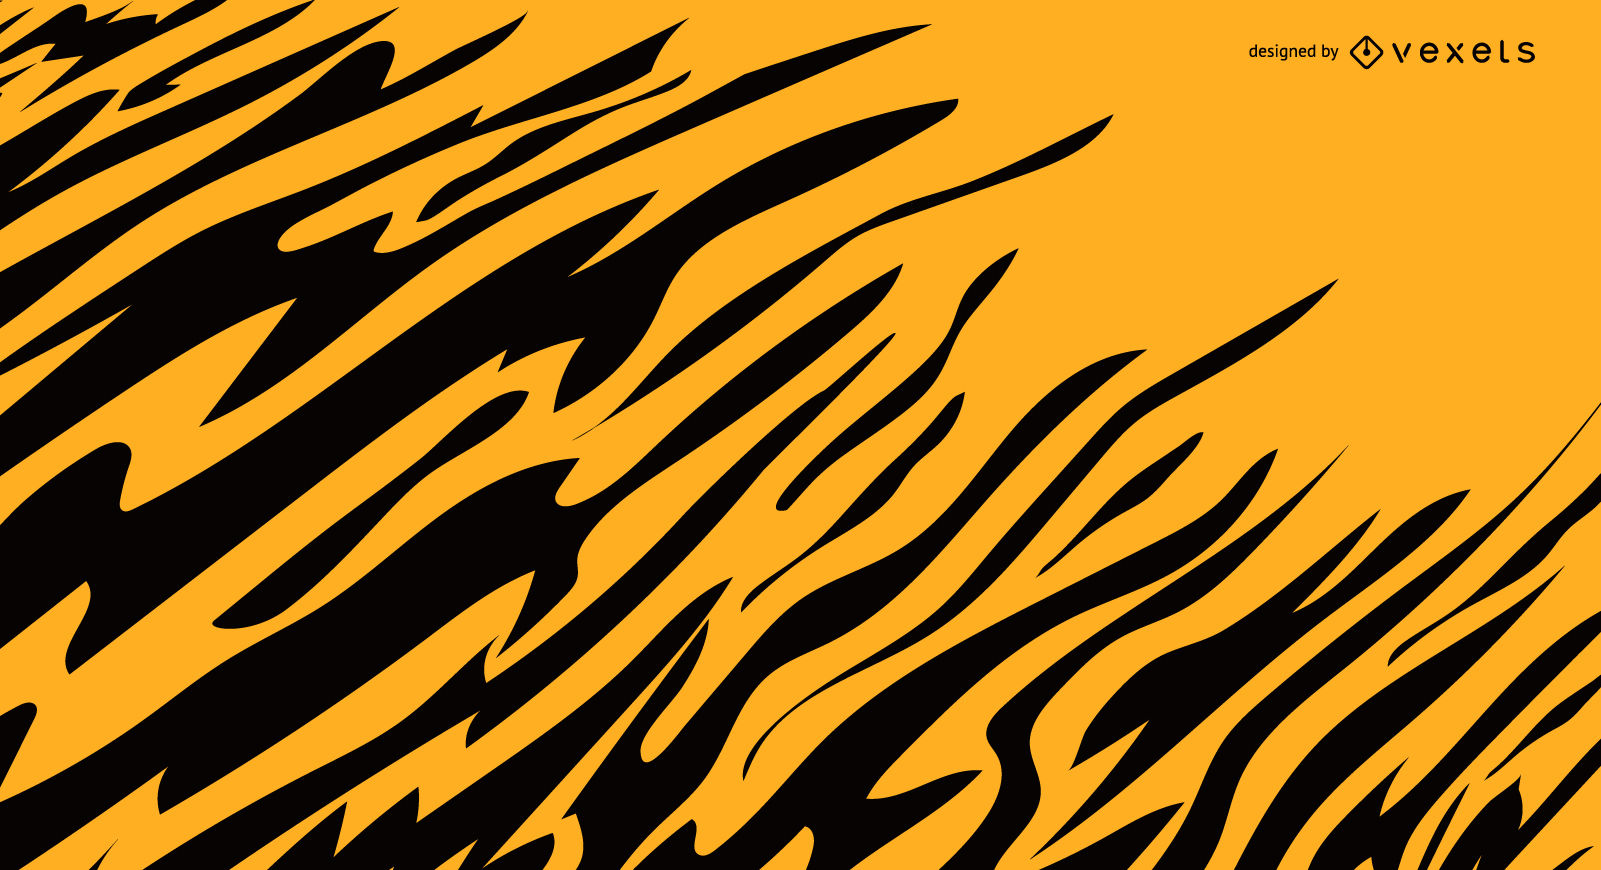 Tiger stripes background.